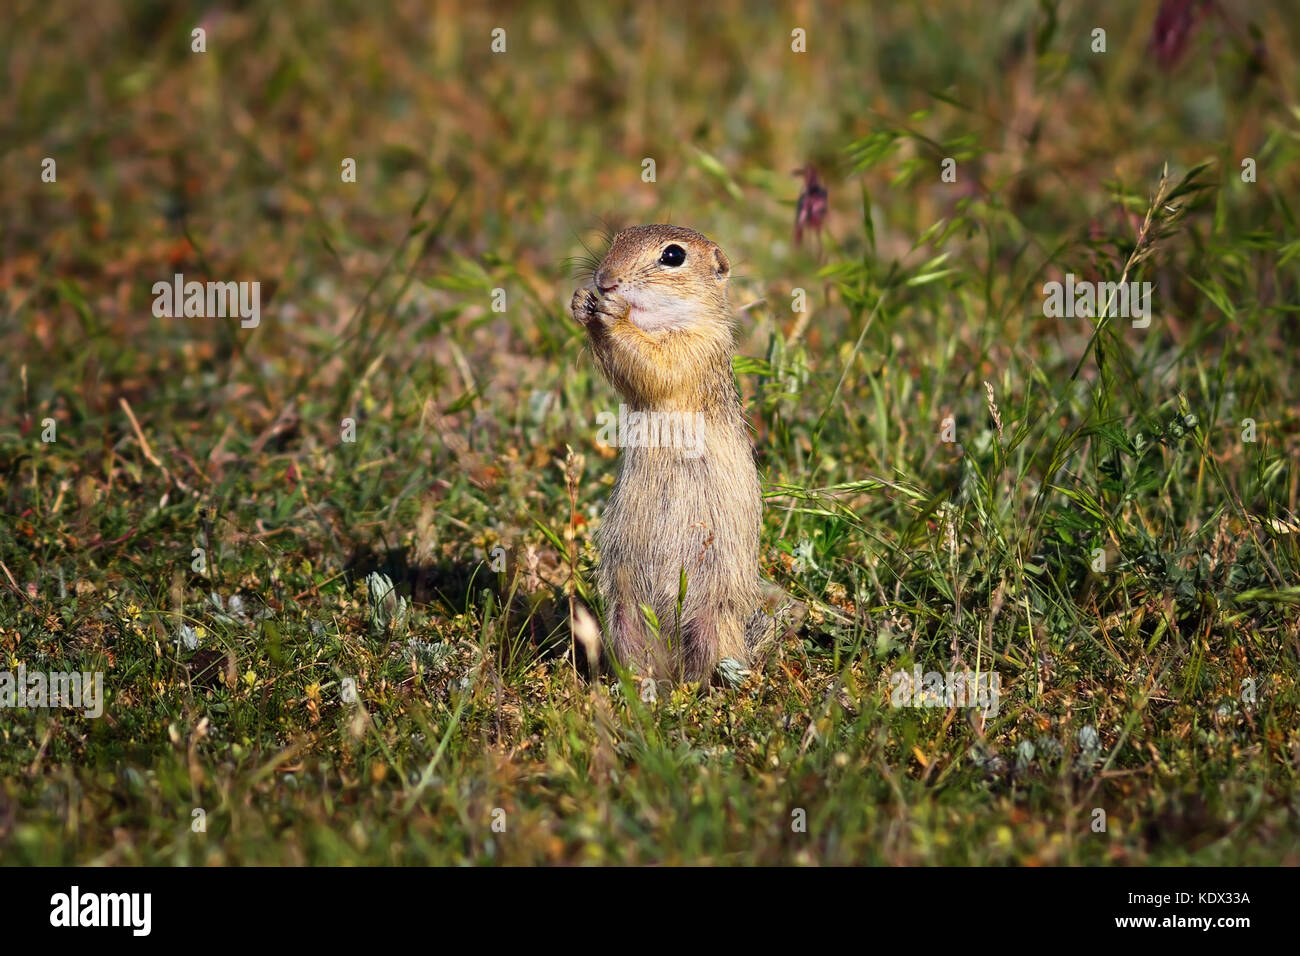 Carino terreno europeo scoiattolo in habitat naturali ( Spermophilus citellus ) Foto Stock